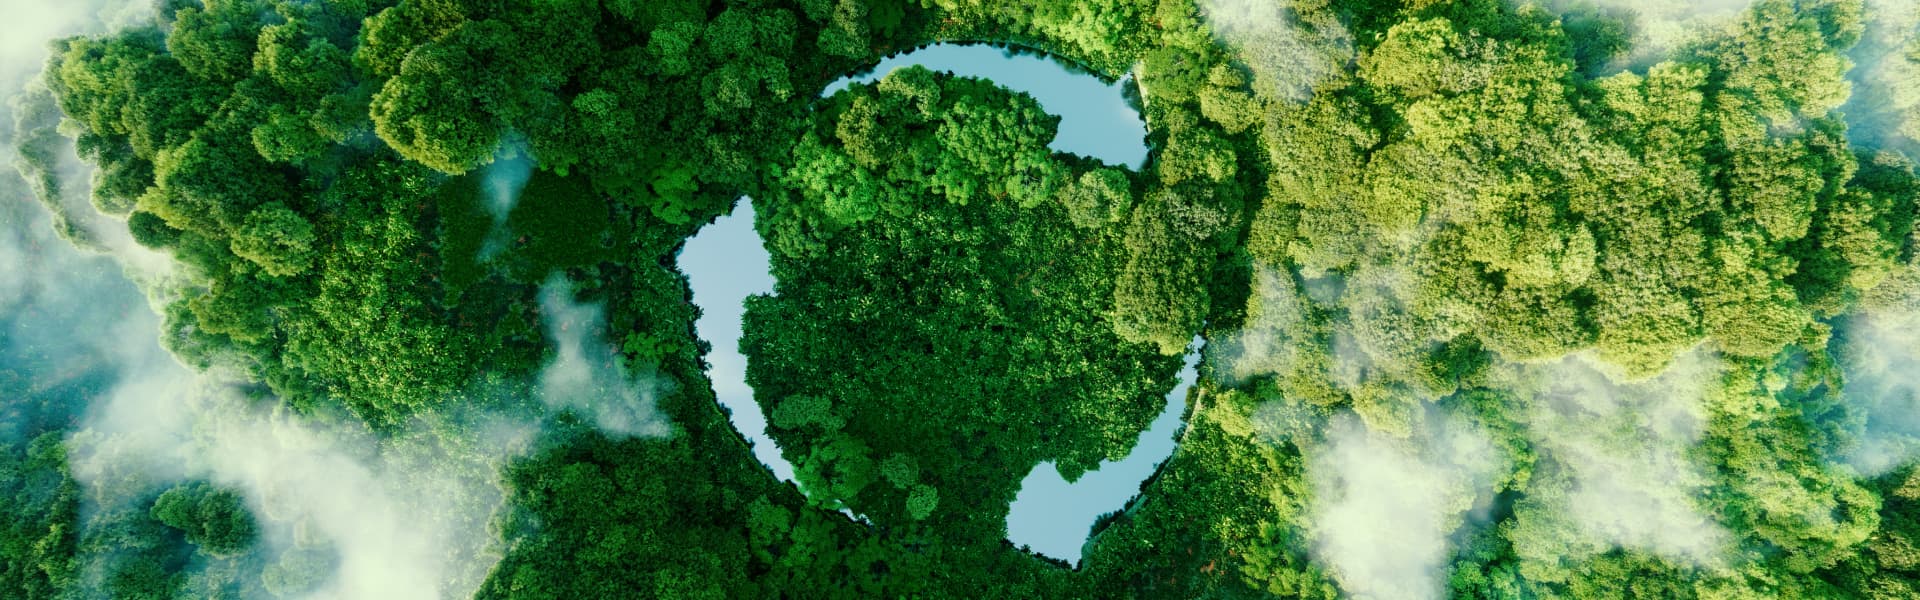 Luftaufnahme eines Waldes in die das Recycling Symbol retuschiert wurde